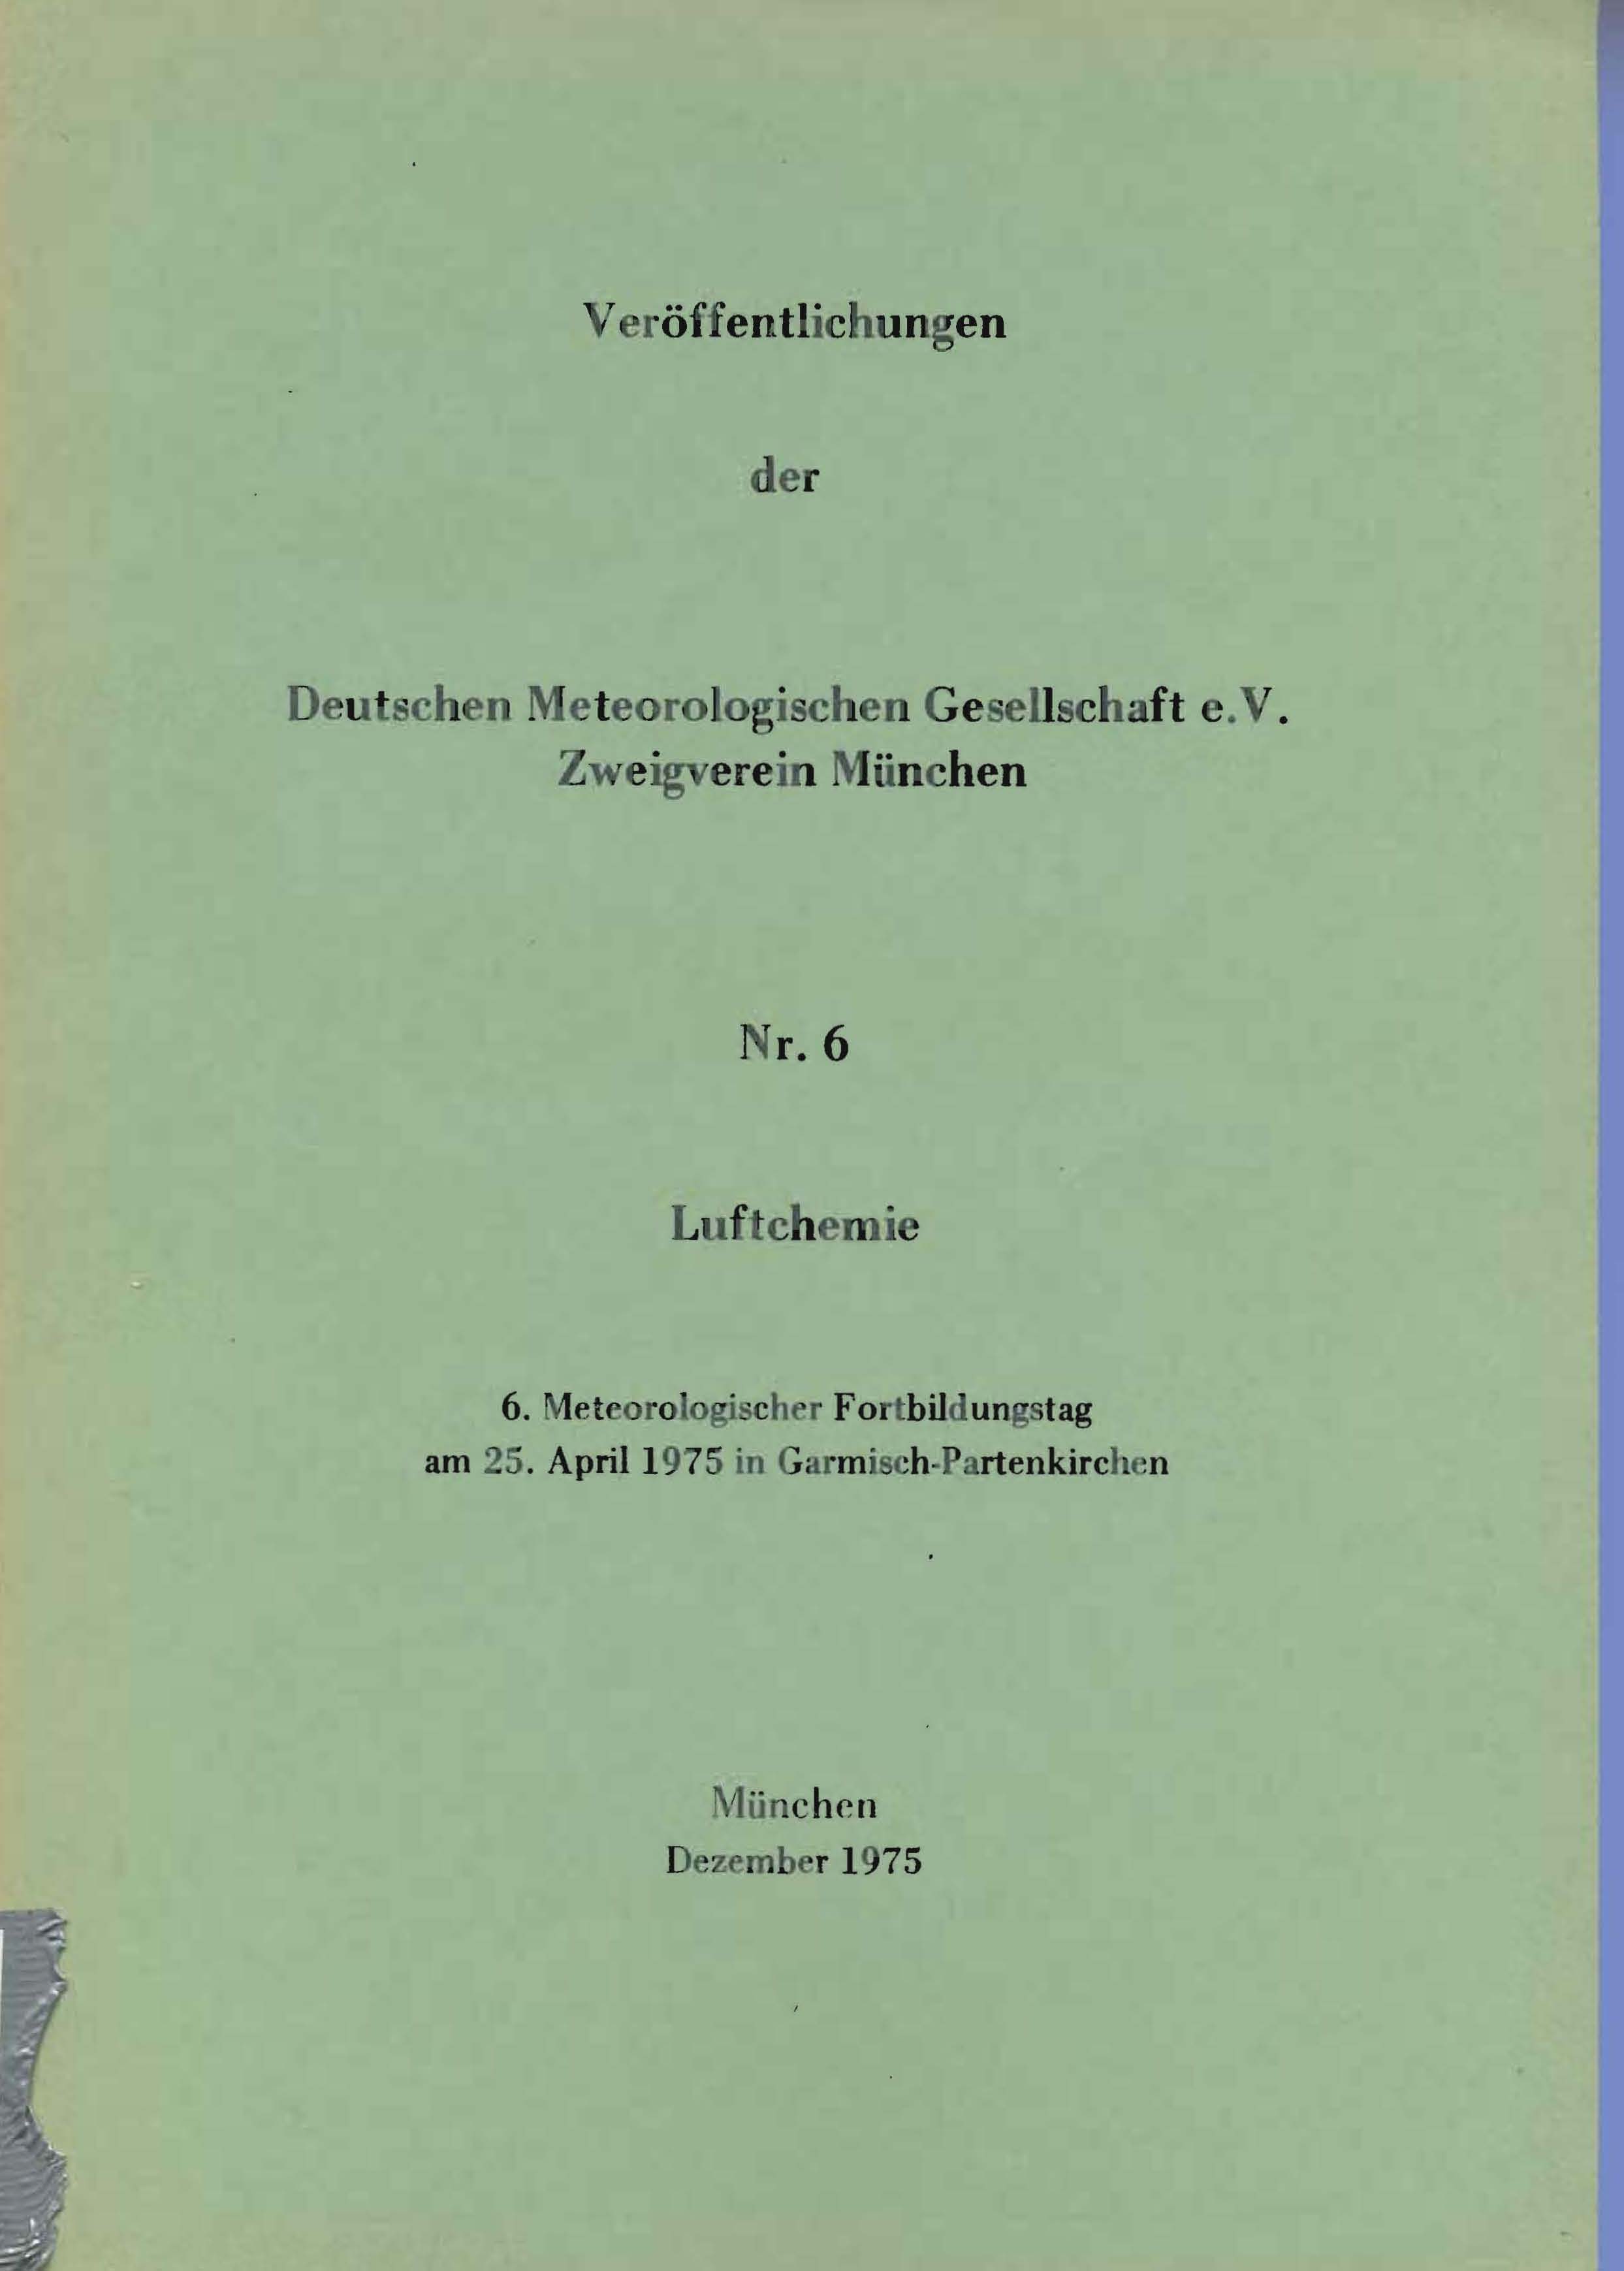 Veröffentlichung der Deutschen Meterologischen Gesellschaft e.V. Zweigverein München